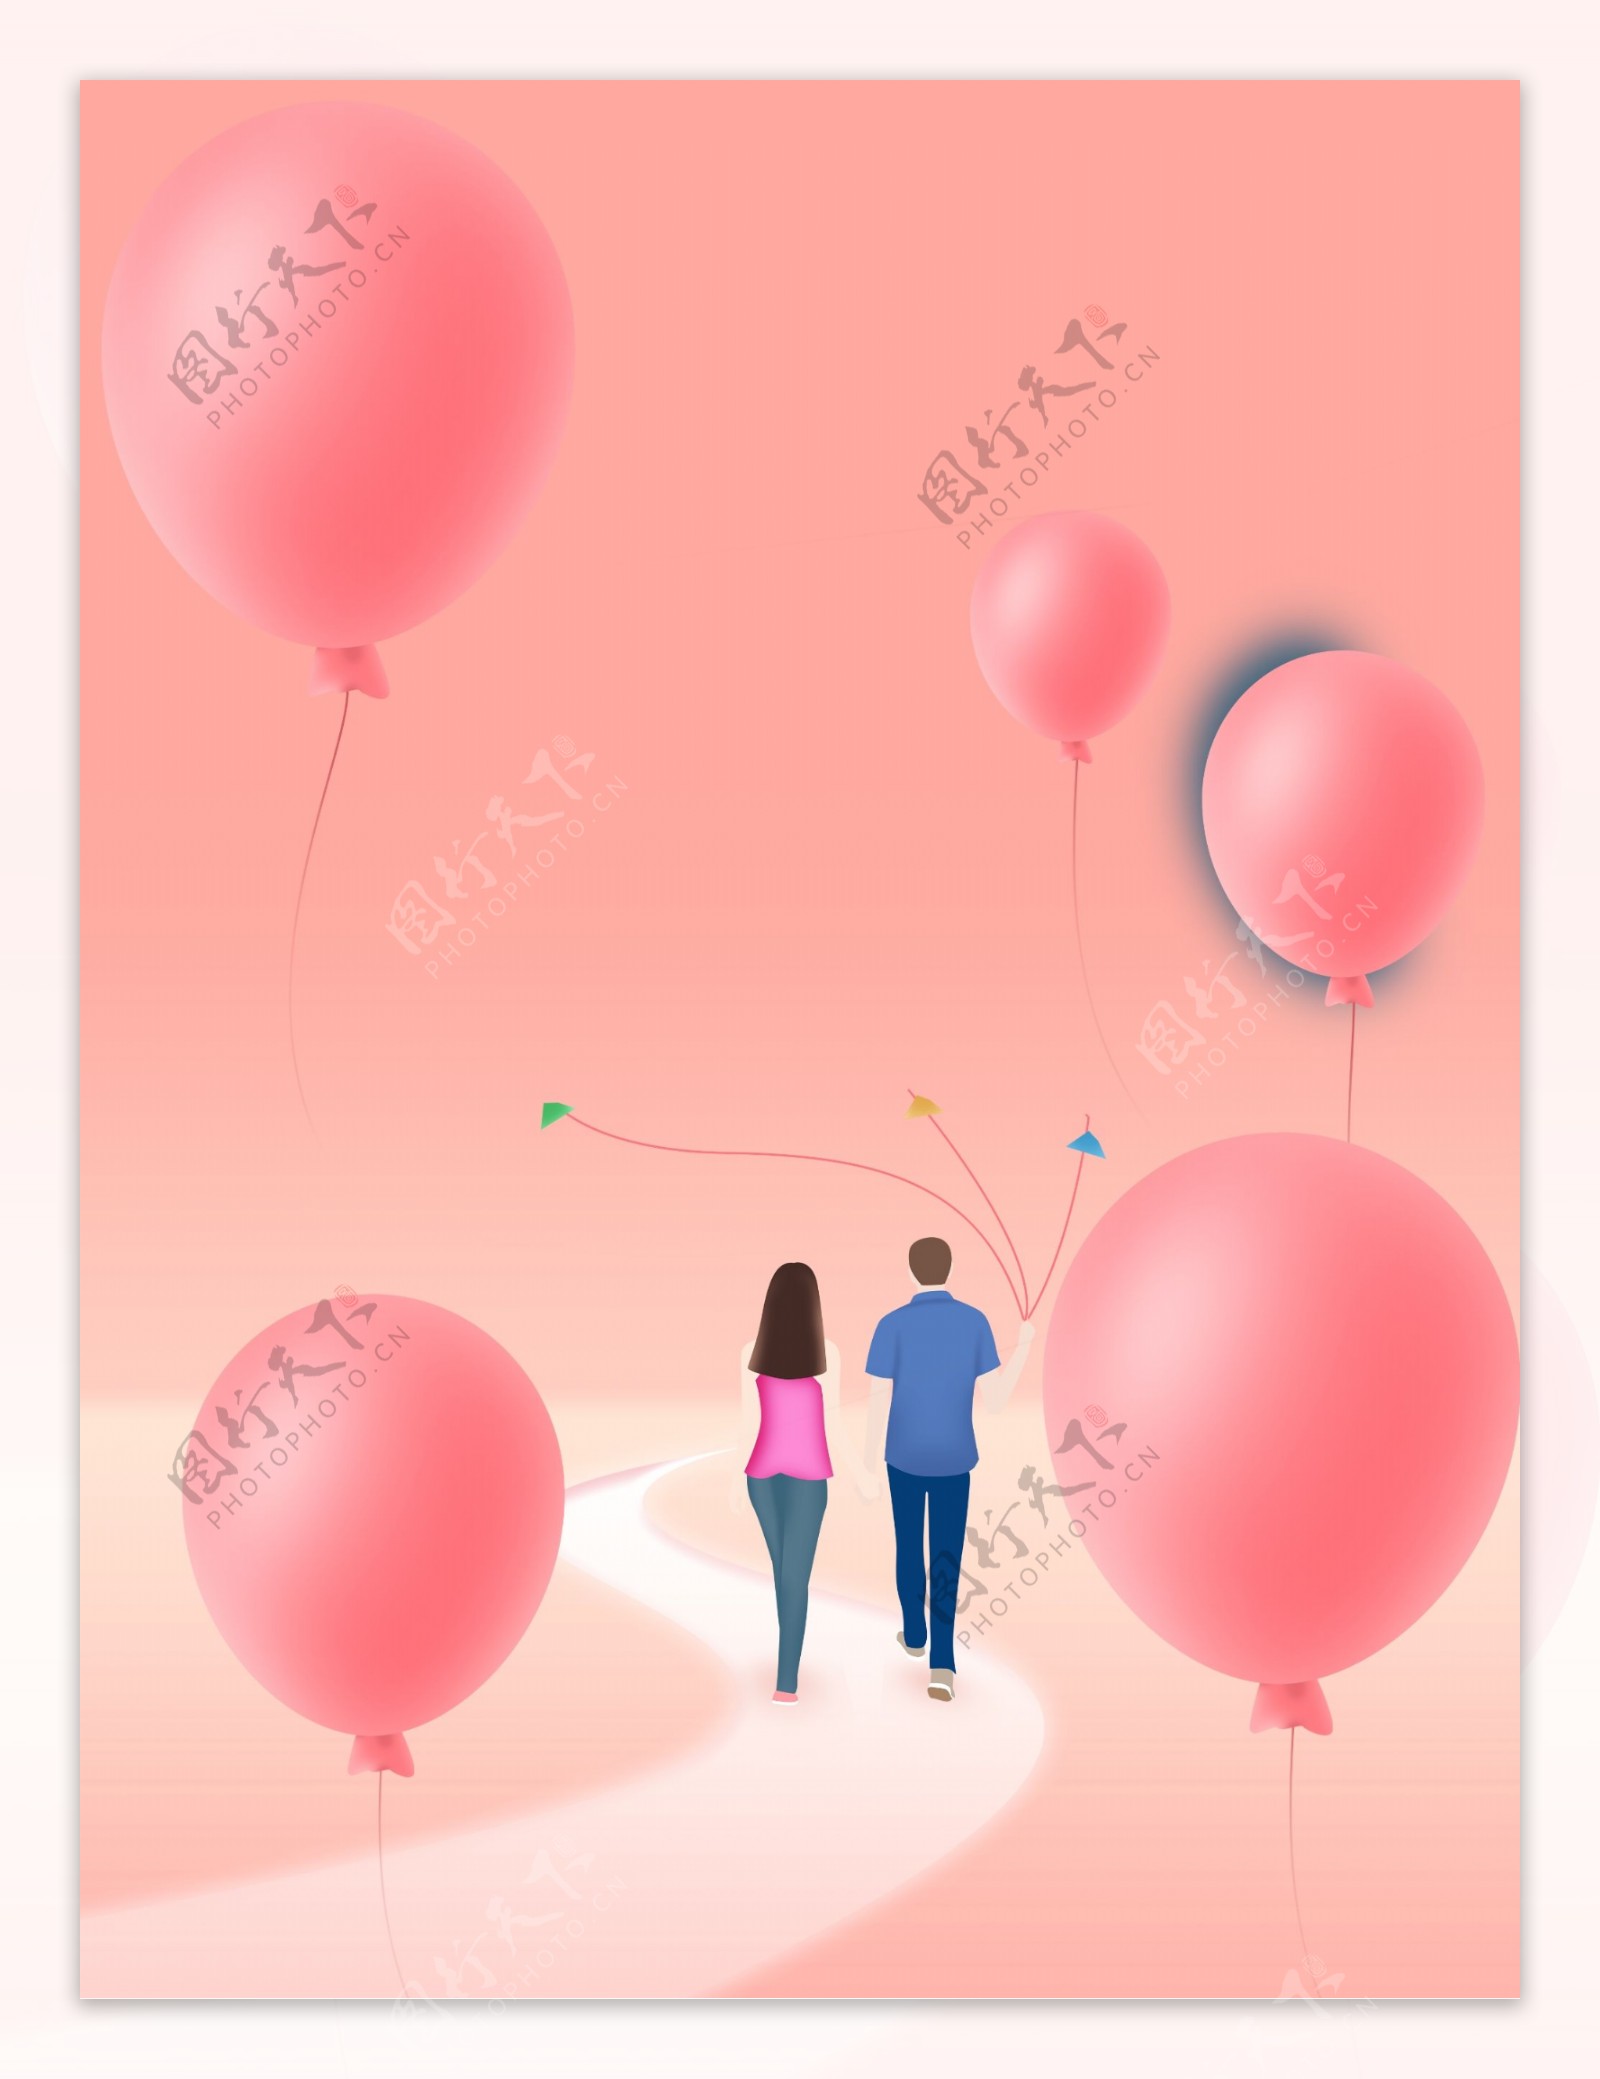 简约唯美浪漫粉色情侣气球广告背景素材